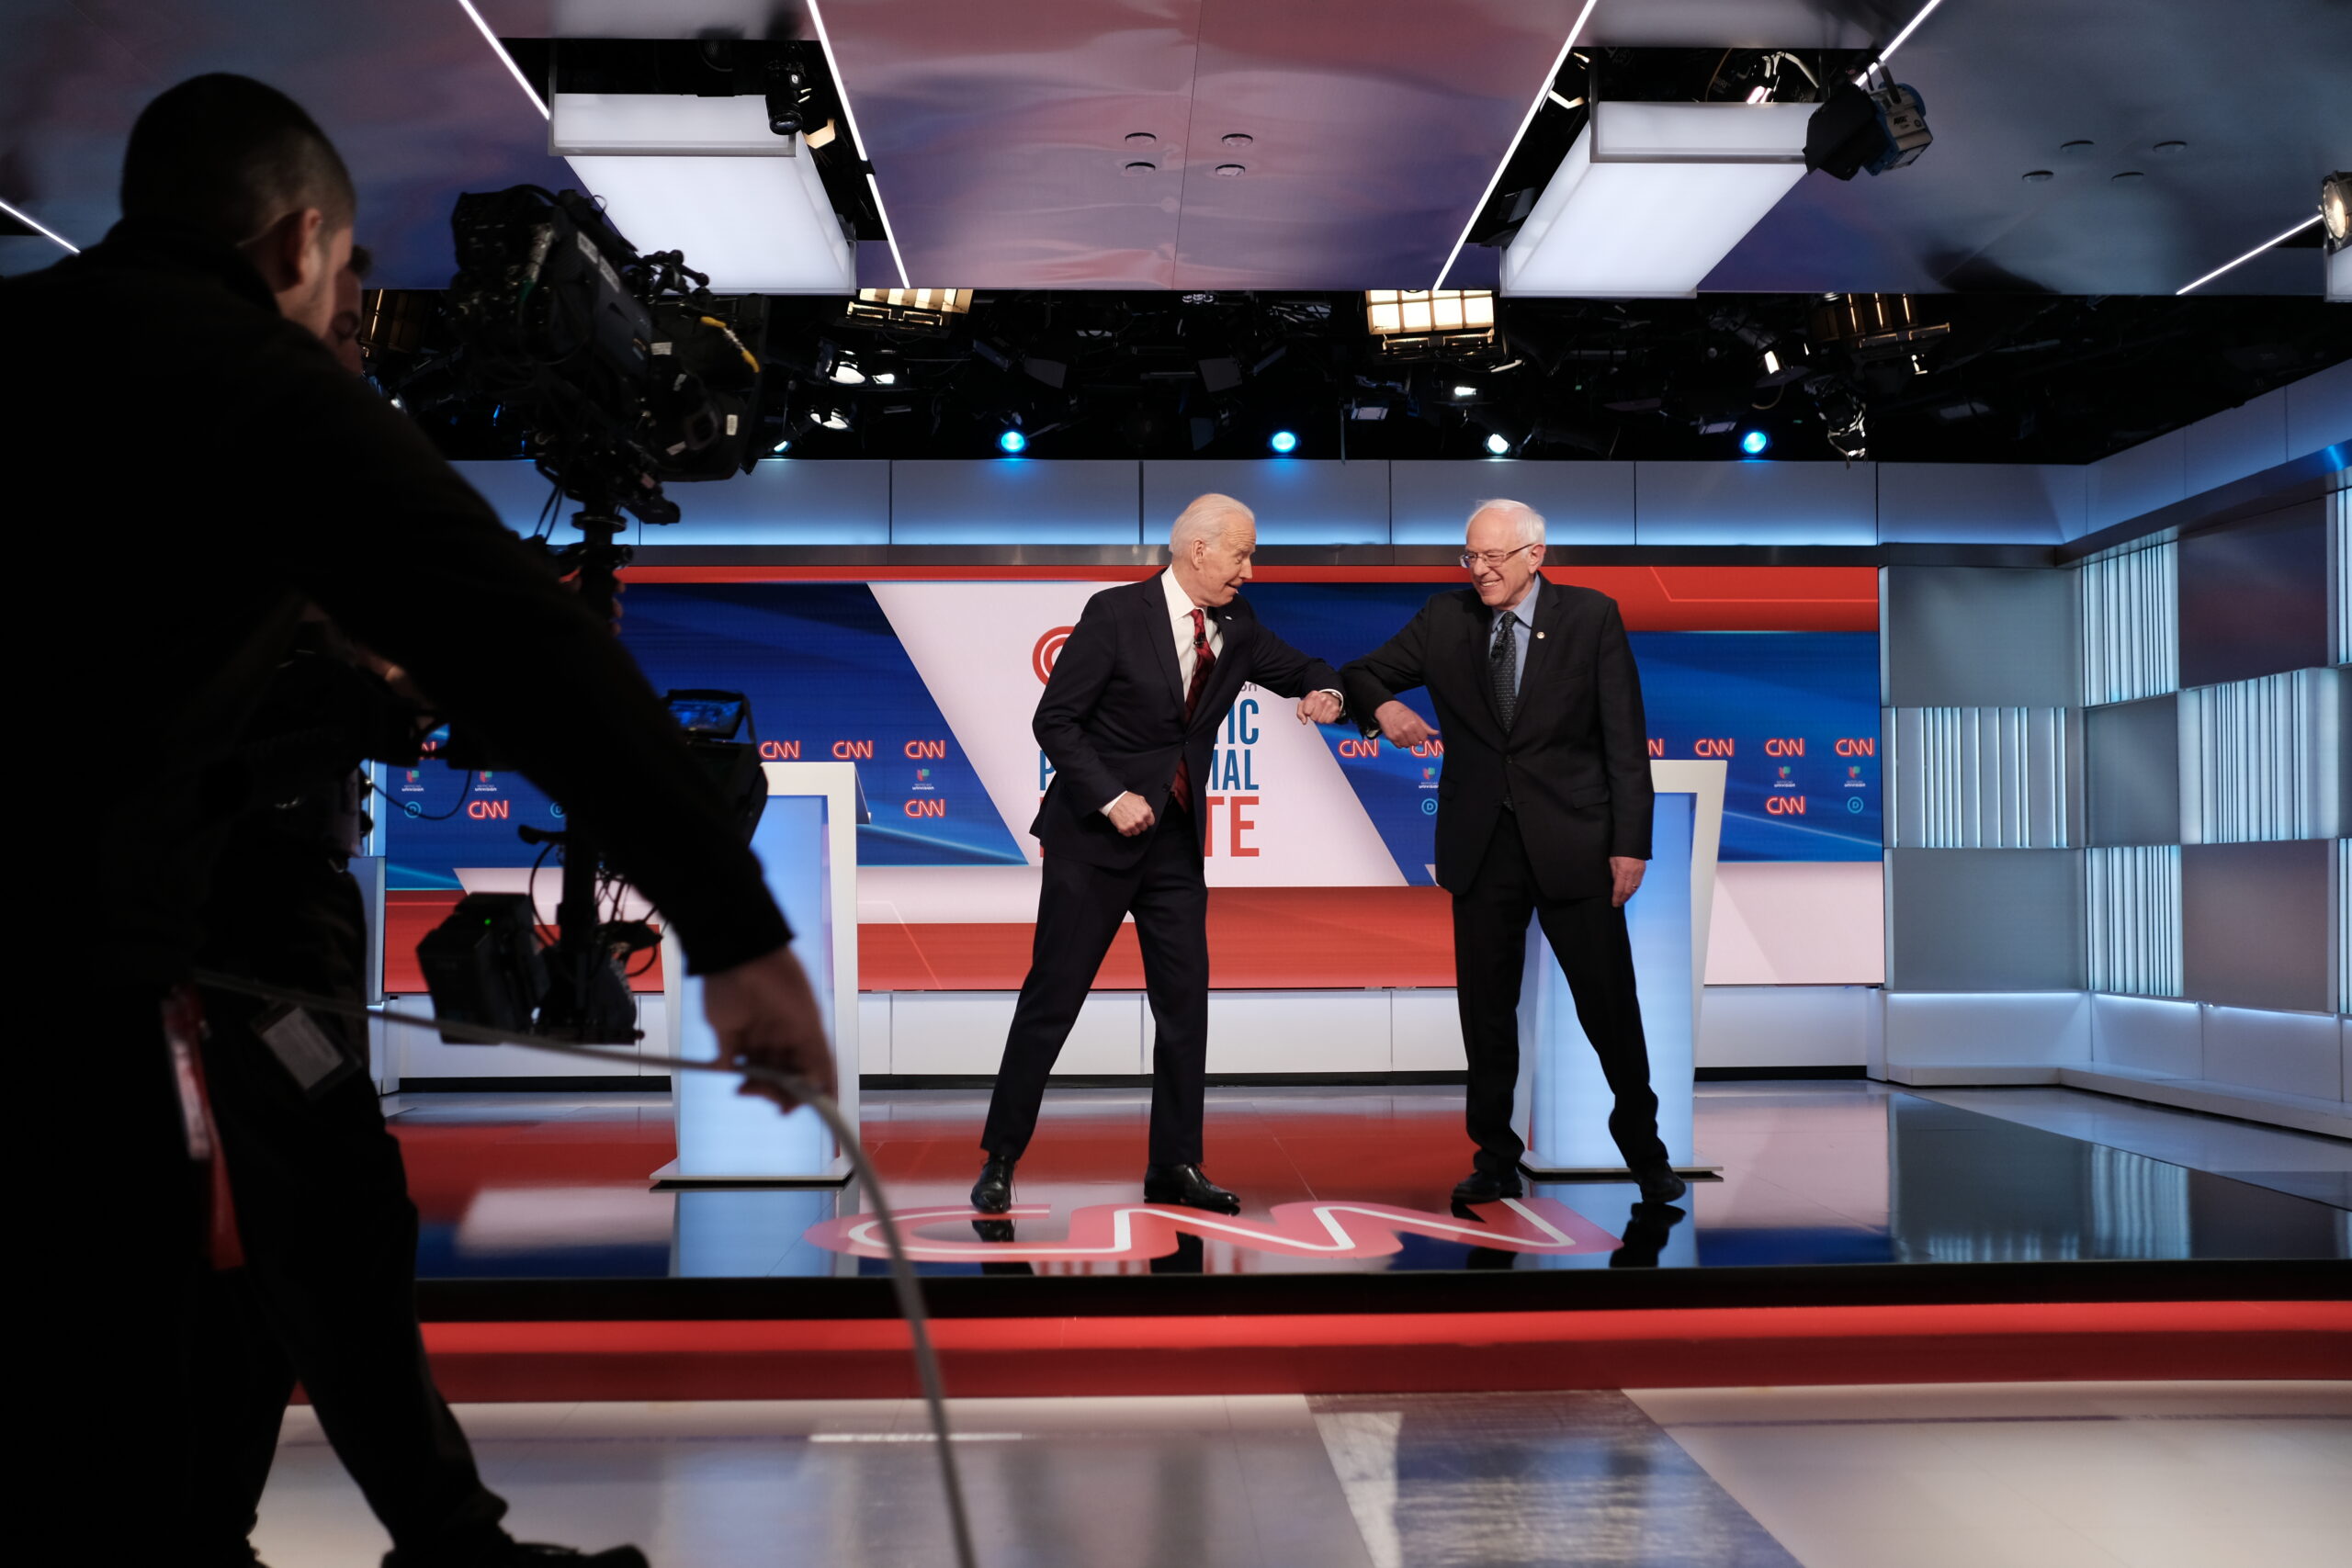 Biden, Sanders, and the coronavirus go head-to-head in Democratic debate